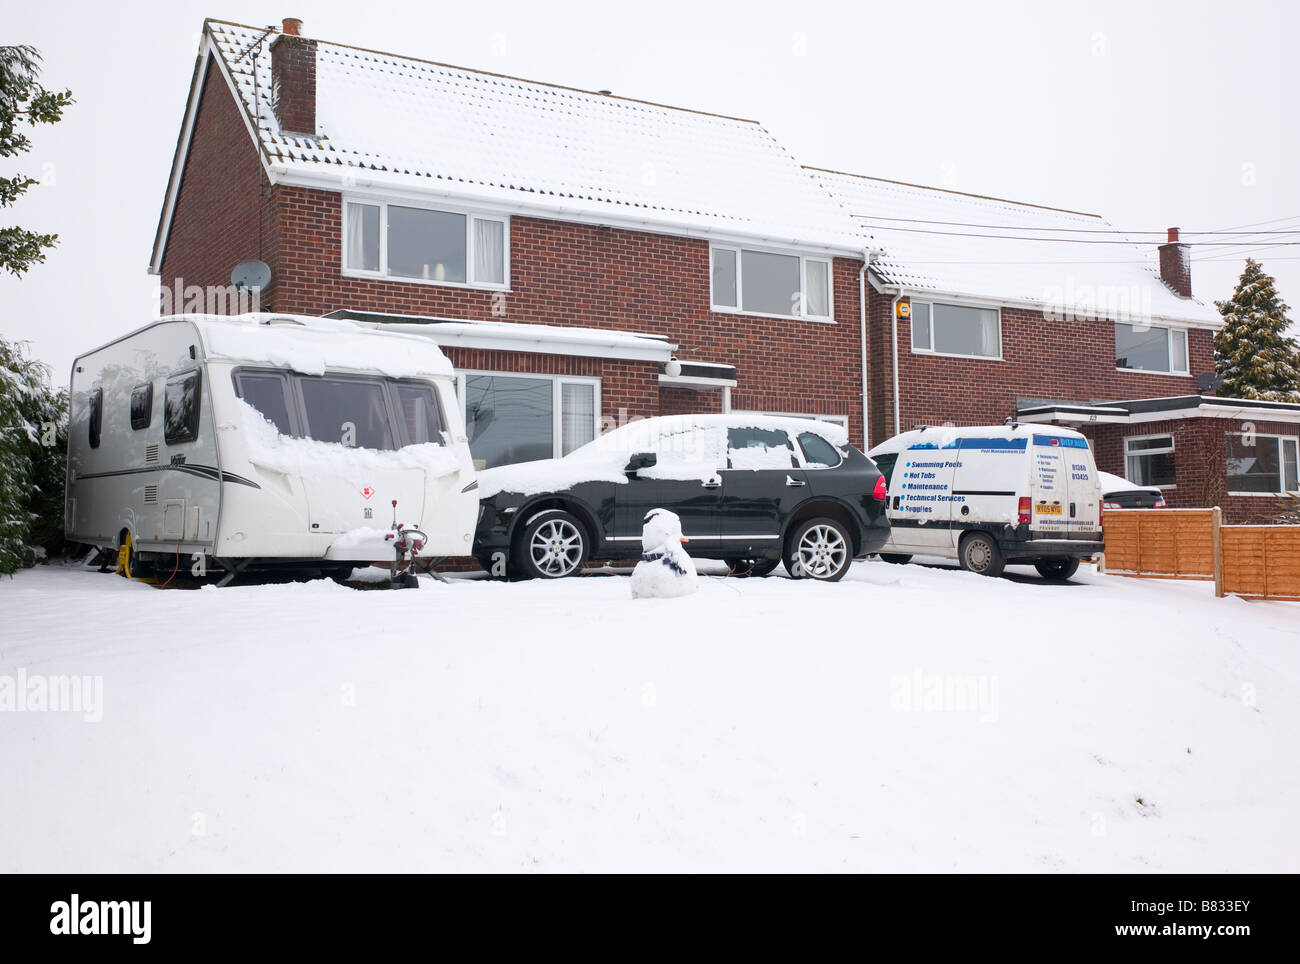 La neige hivernale et caravane permet de voitures stationnées à domicile après une période de mauvais temps Banque D'Images